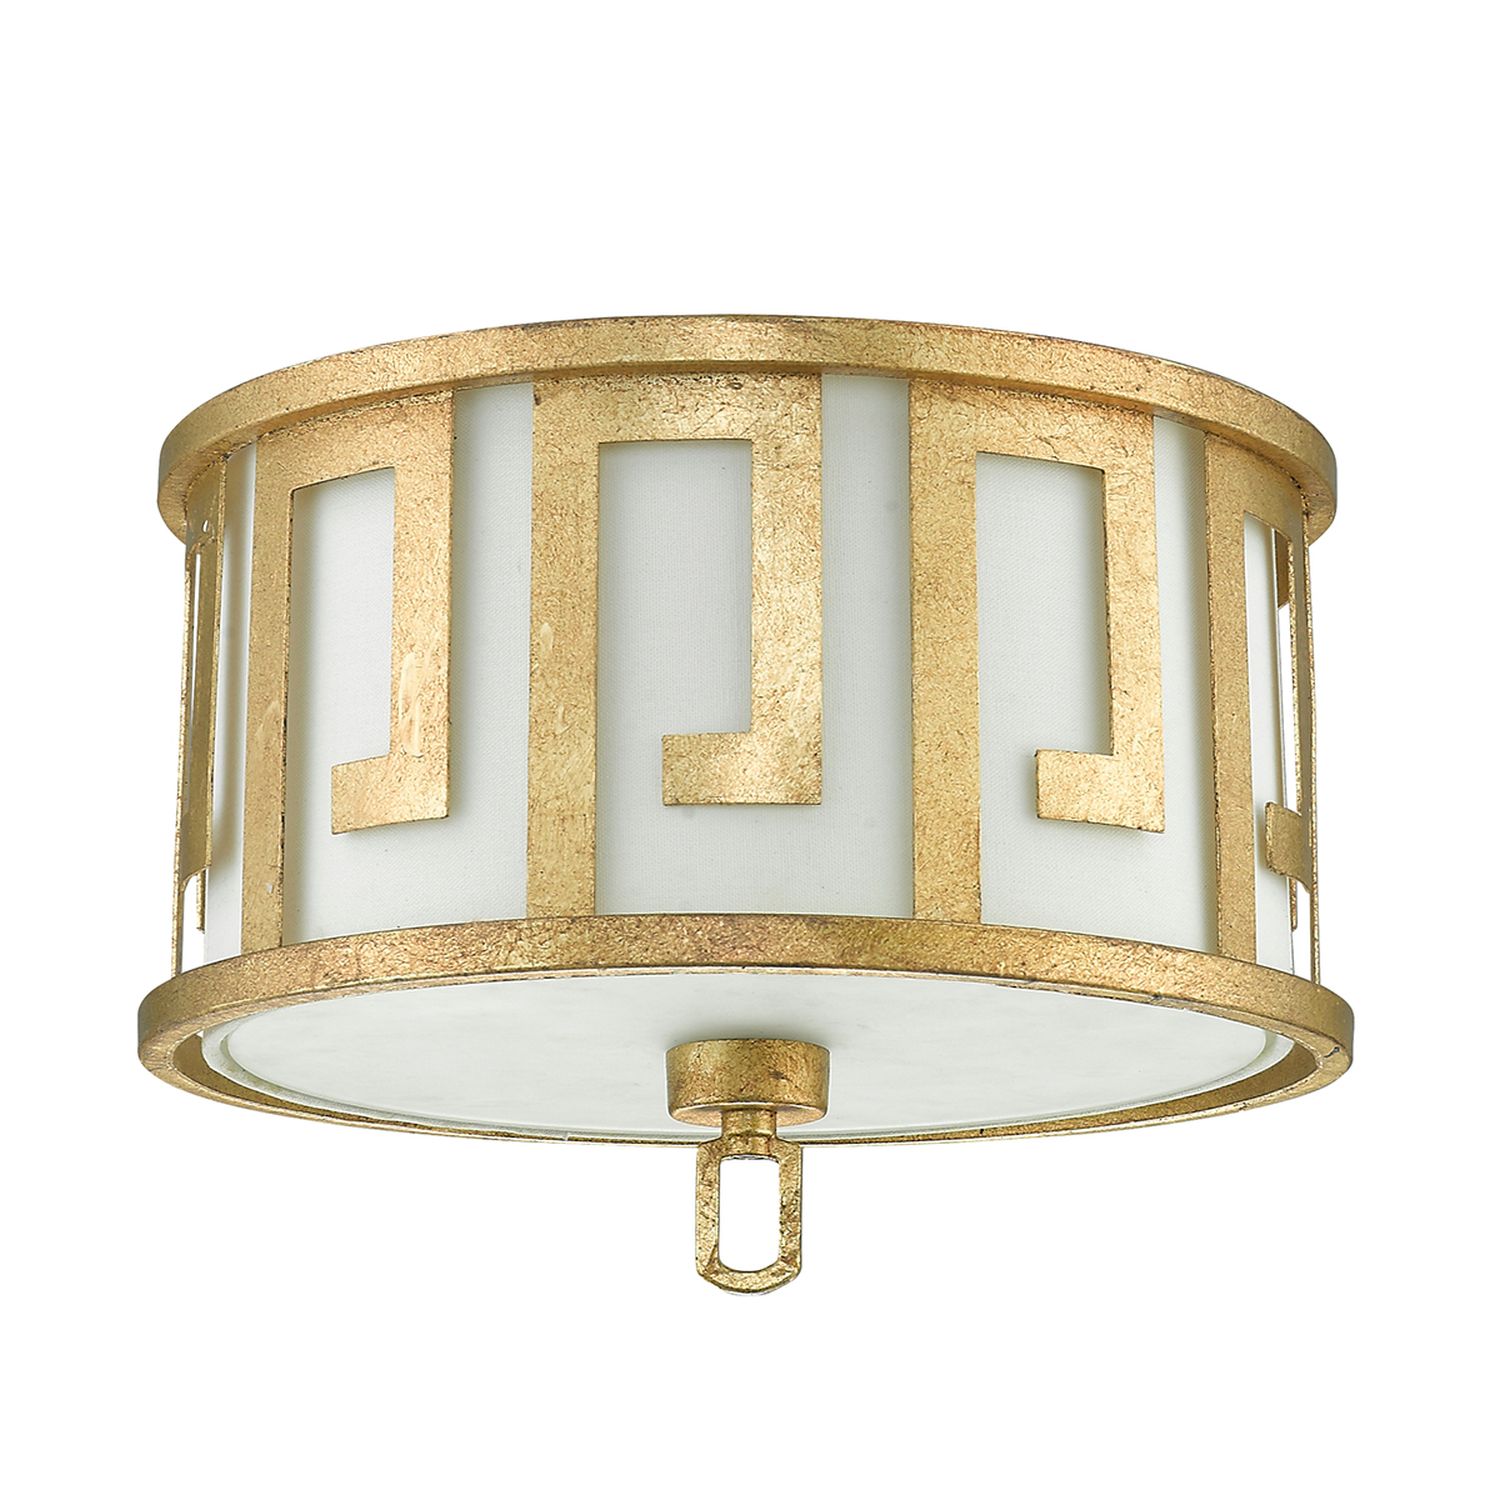 Deckenlampe Vintage Mediterran in Creme Gold AIROSO